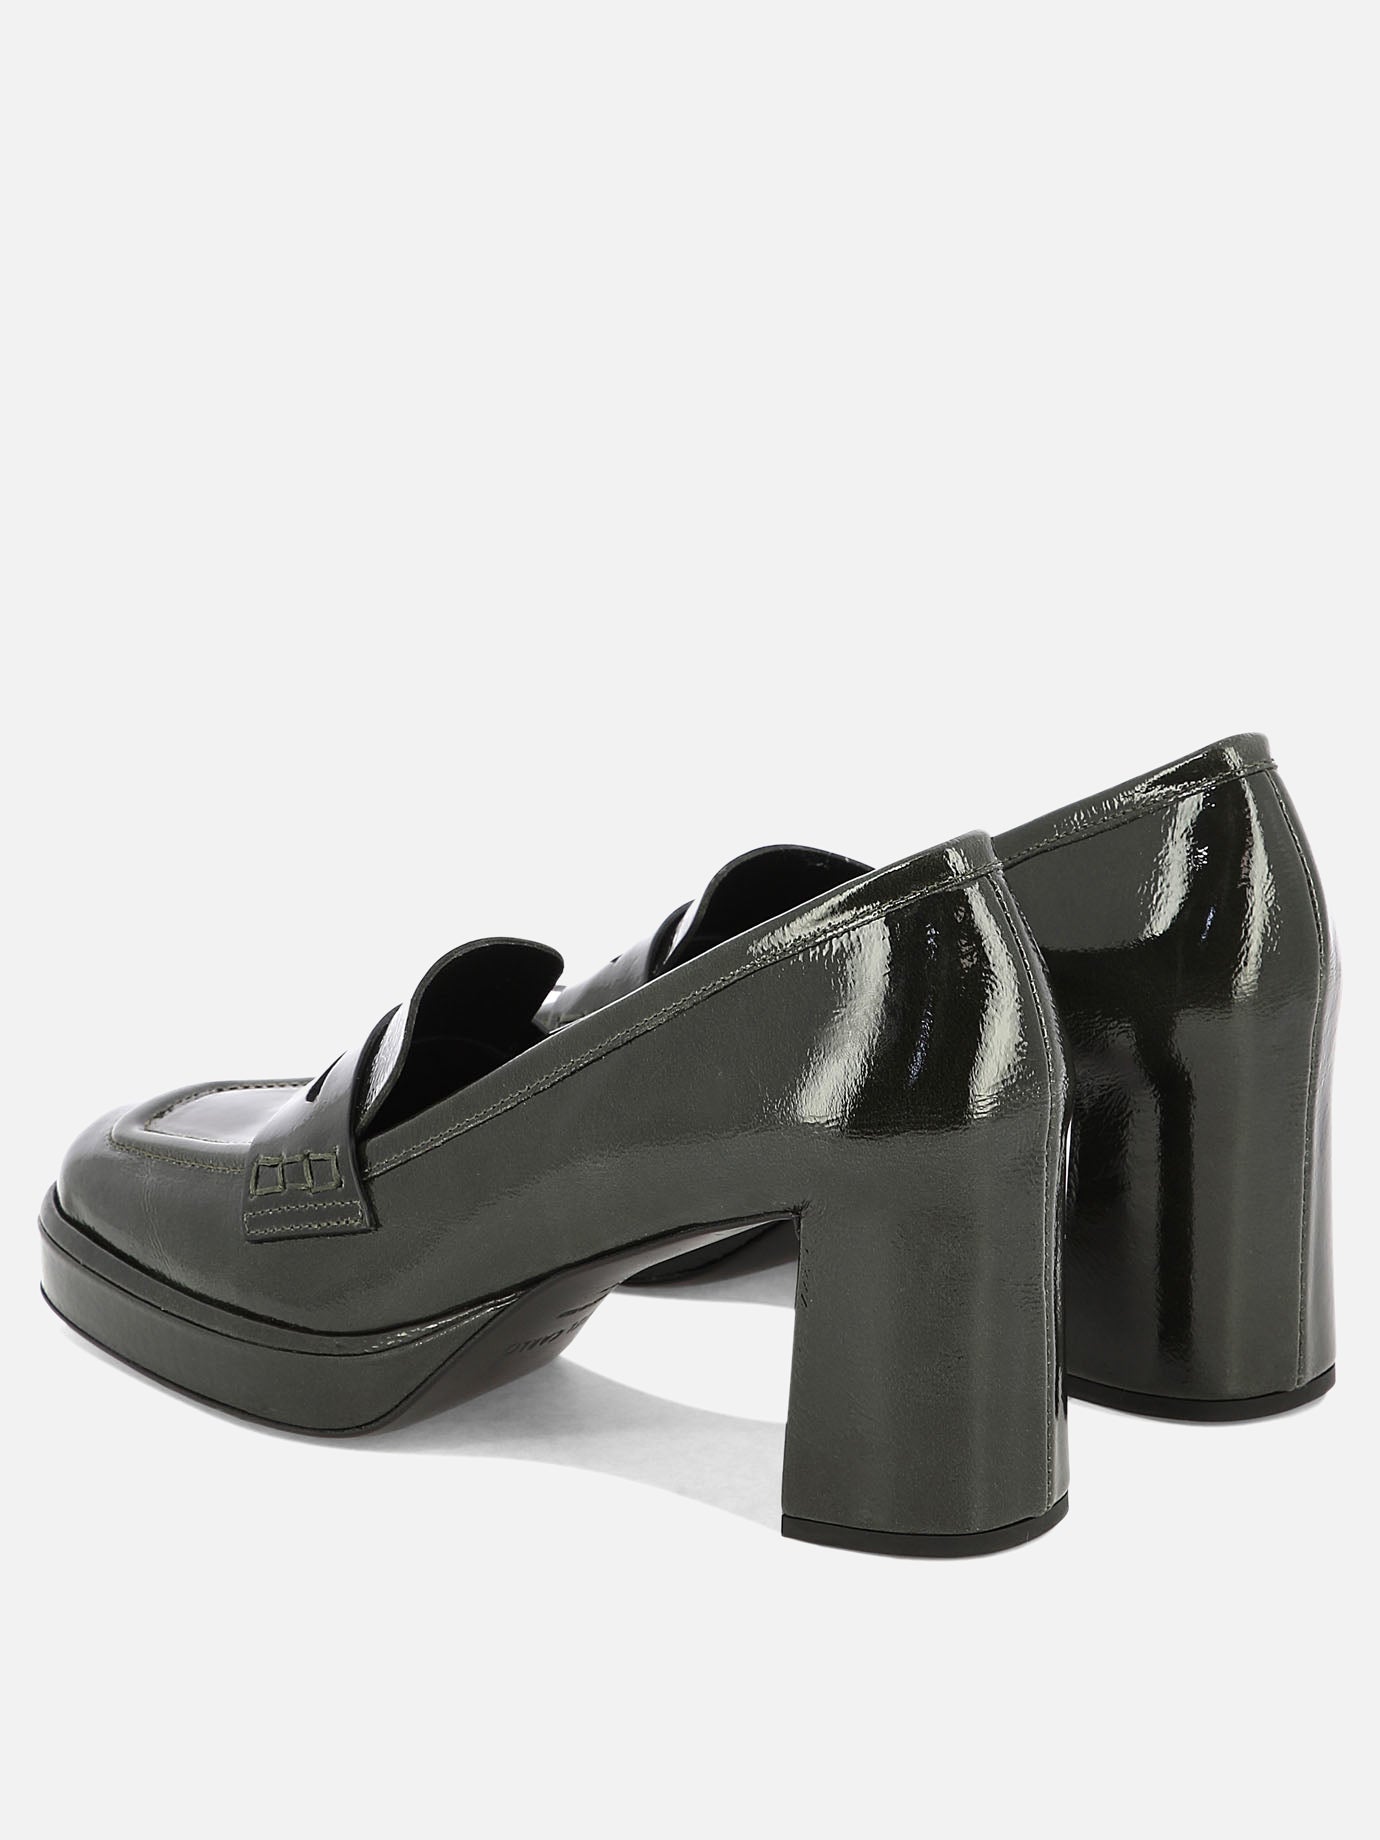 "Lisbona" heeled loafers